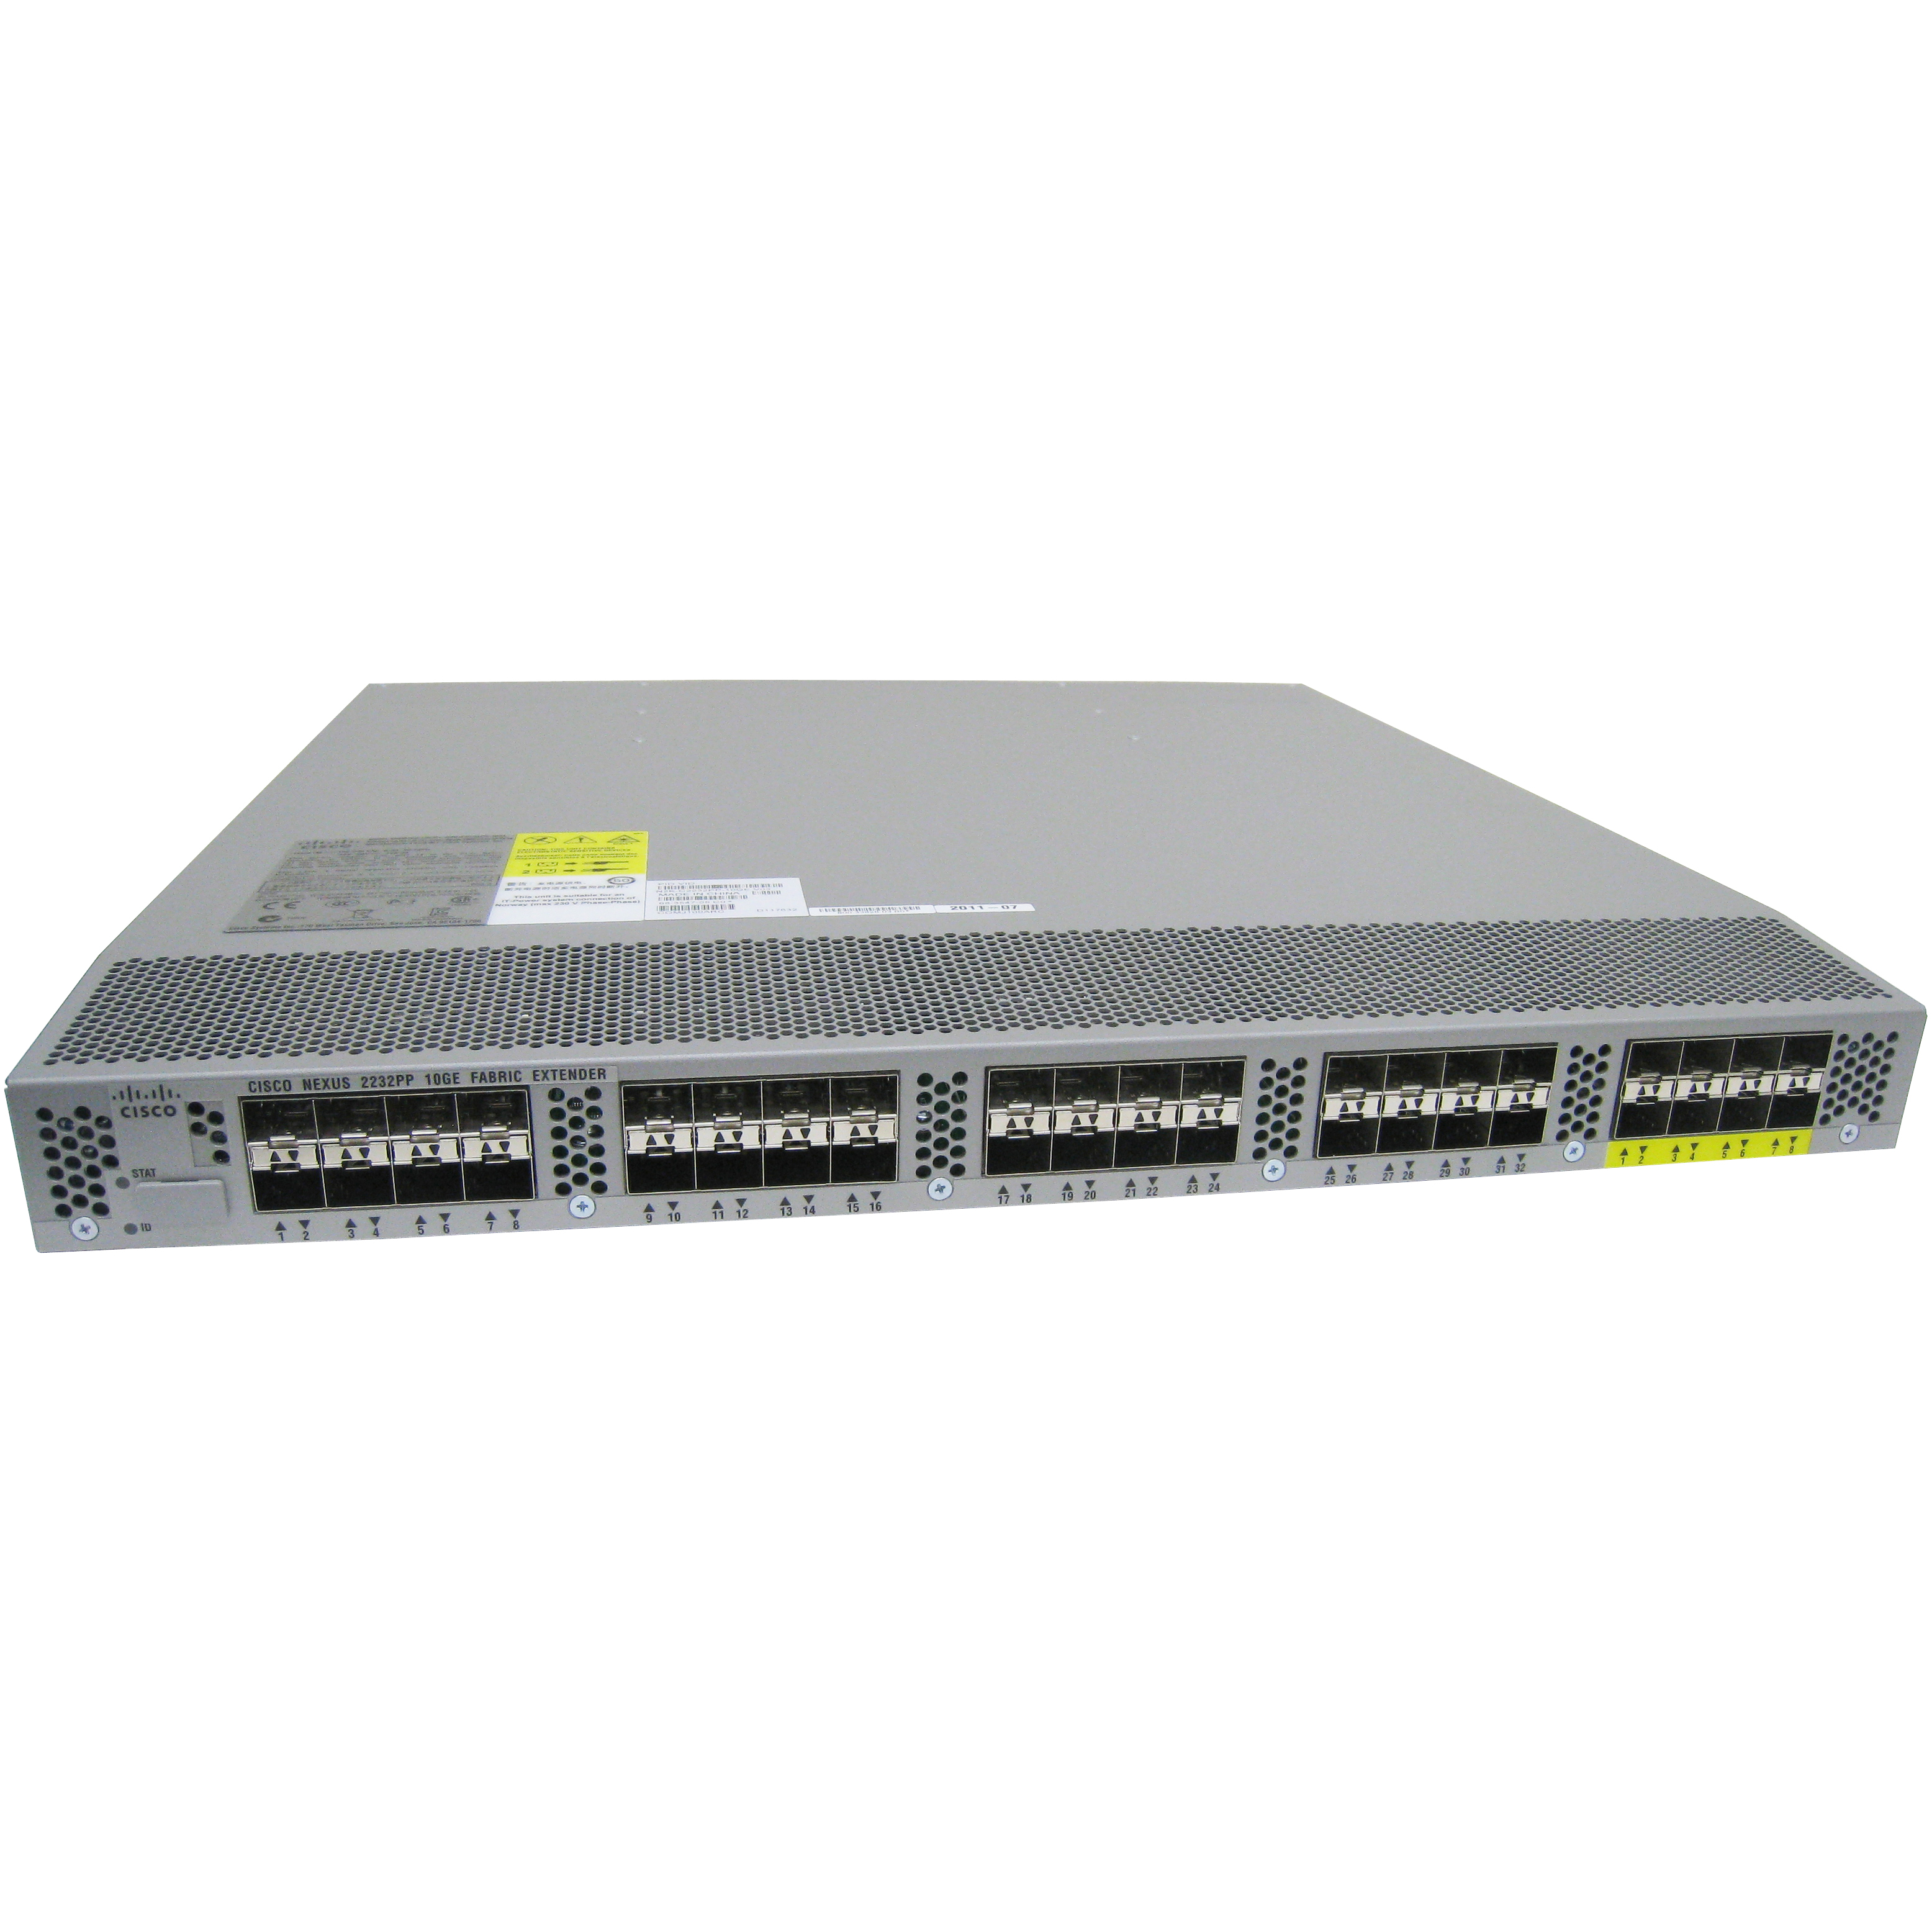 Cisco N2K-C2232PP-10GE